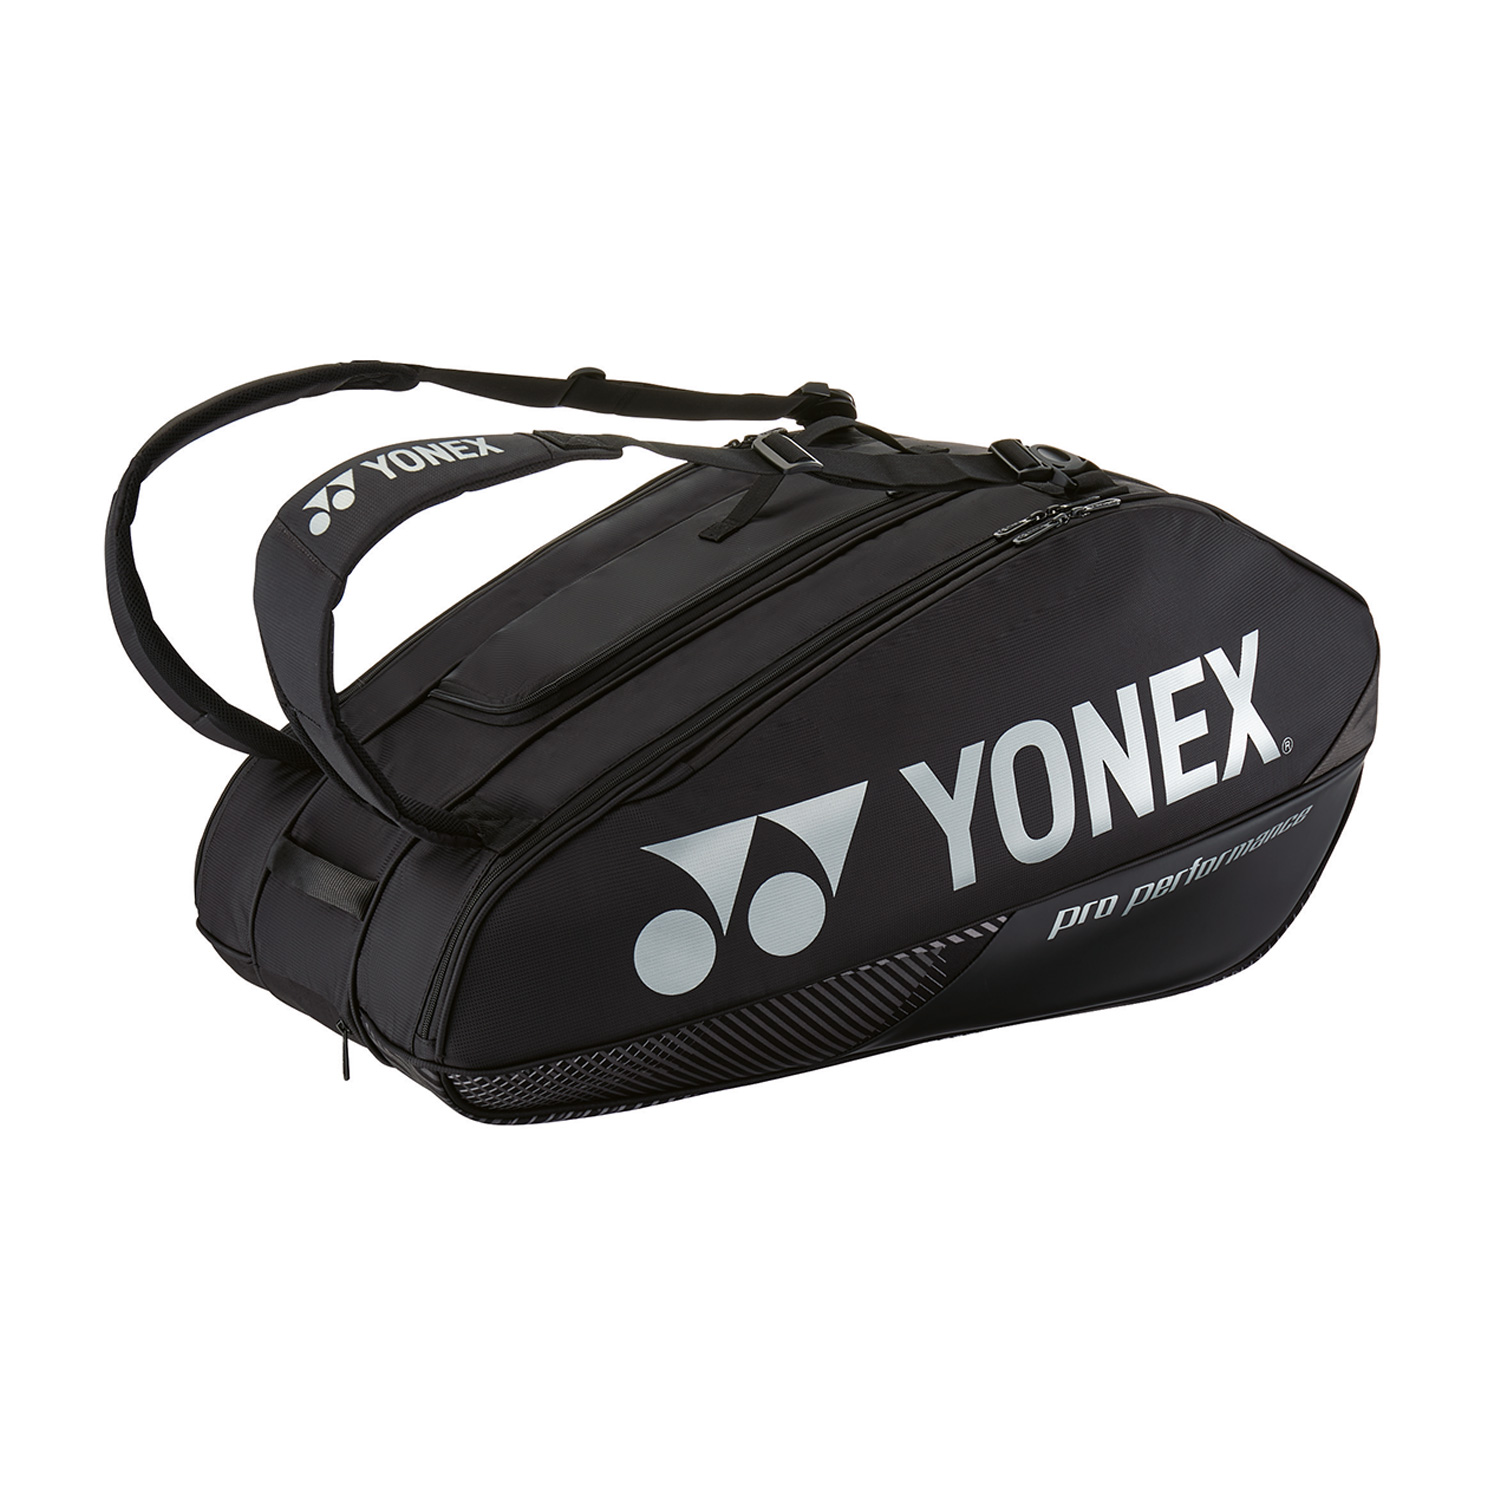 Yonex Bag Pro x 9 Bag - Black